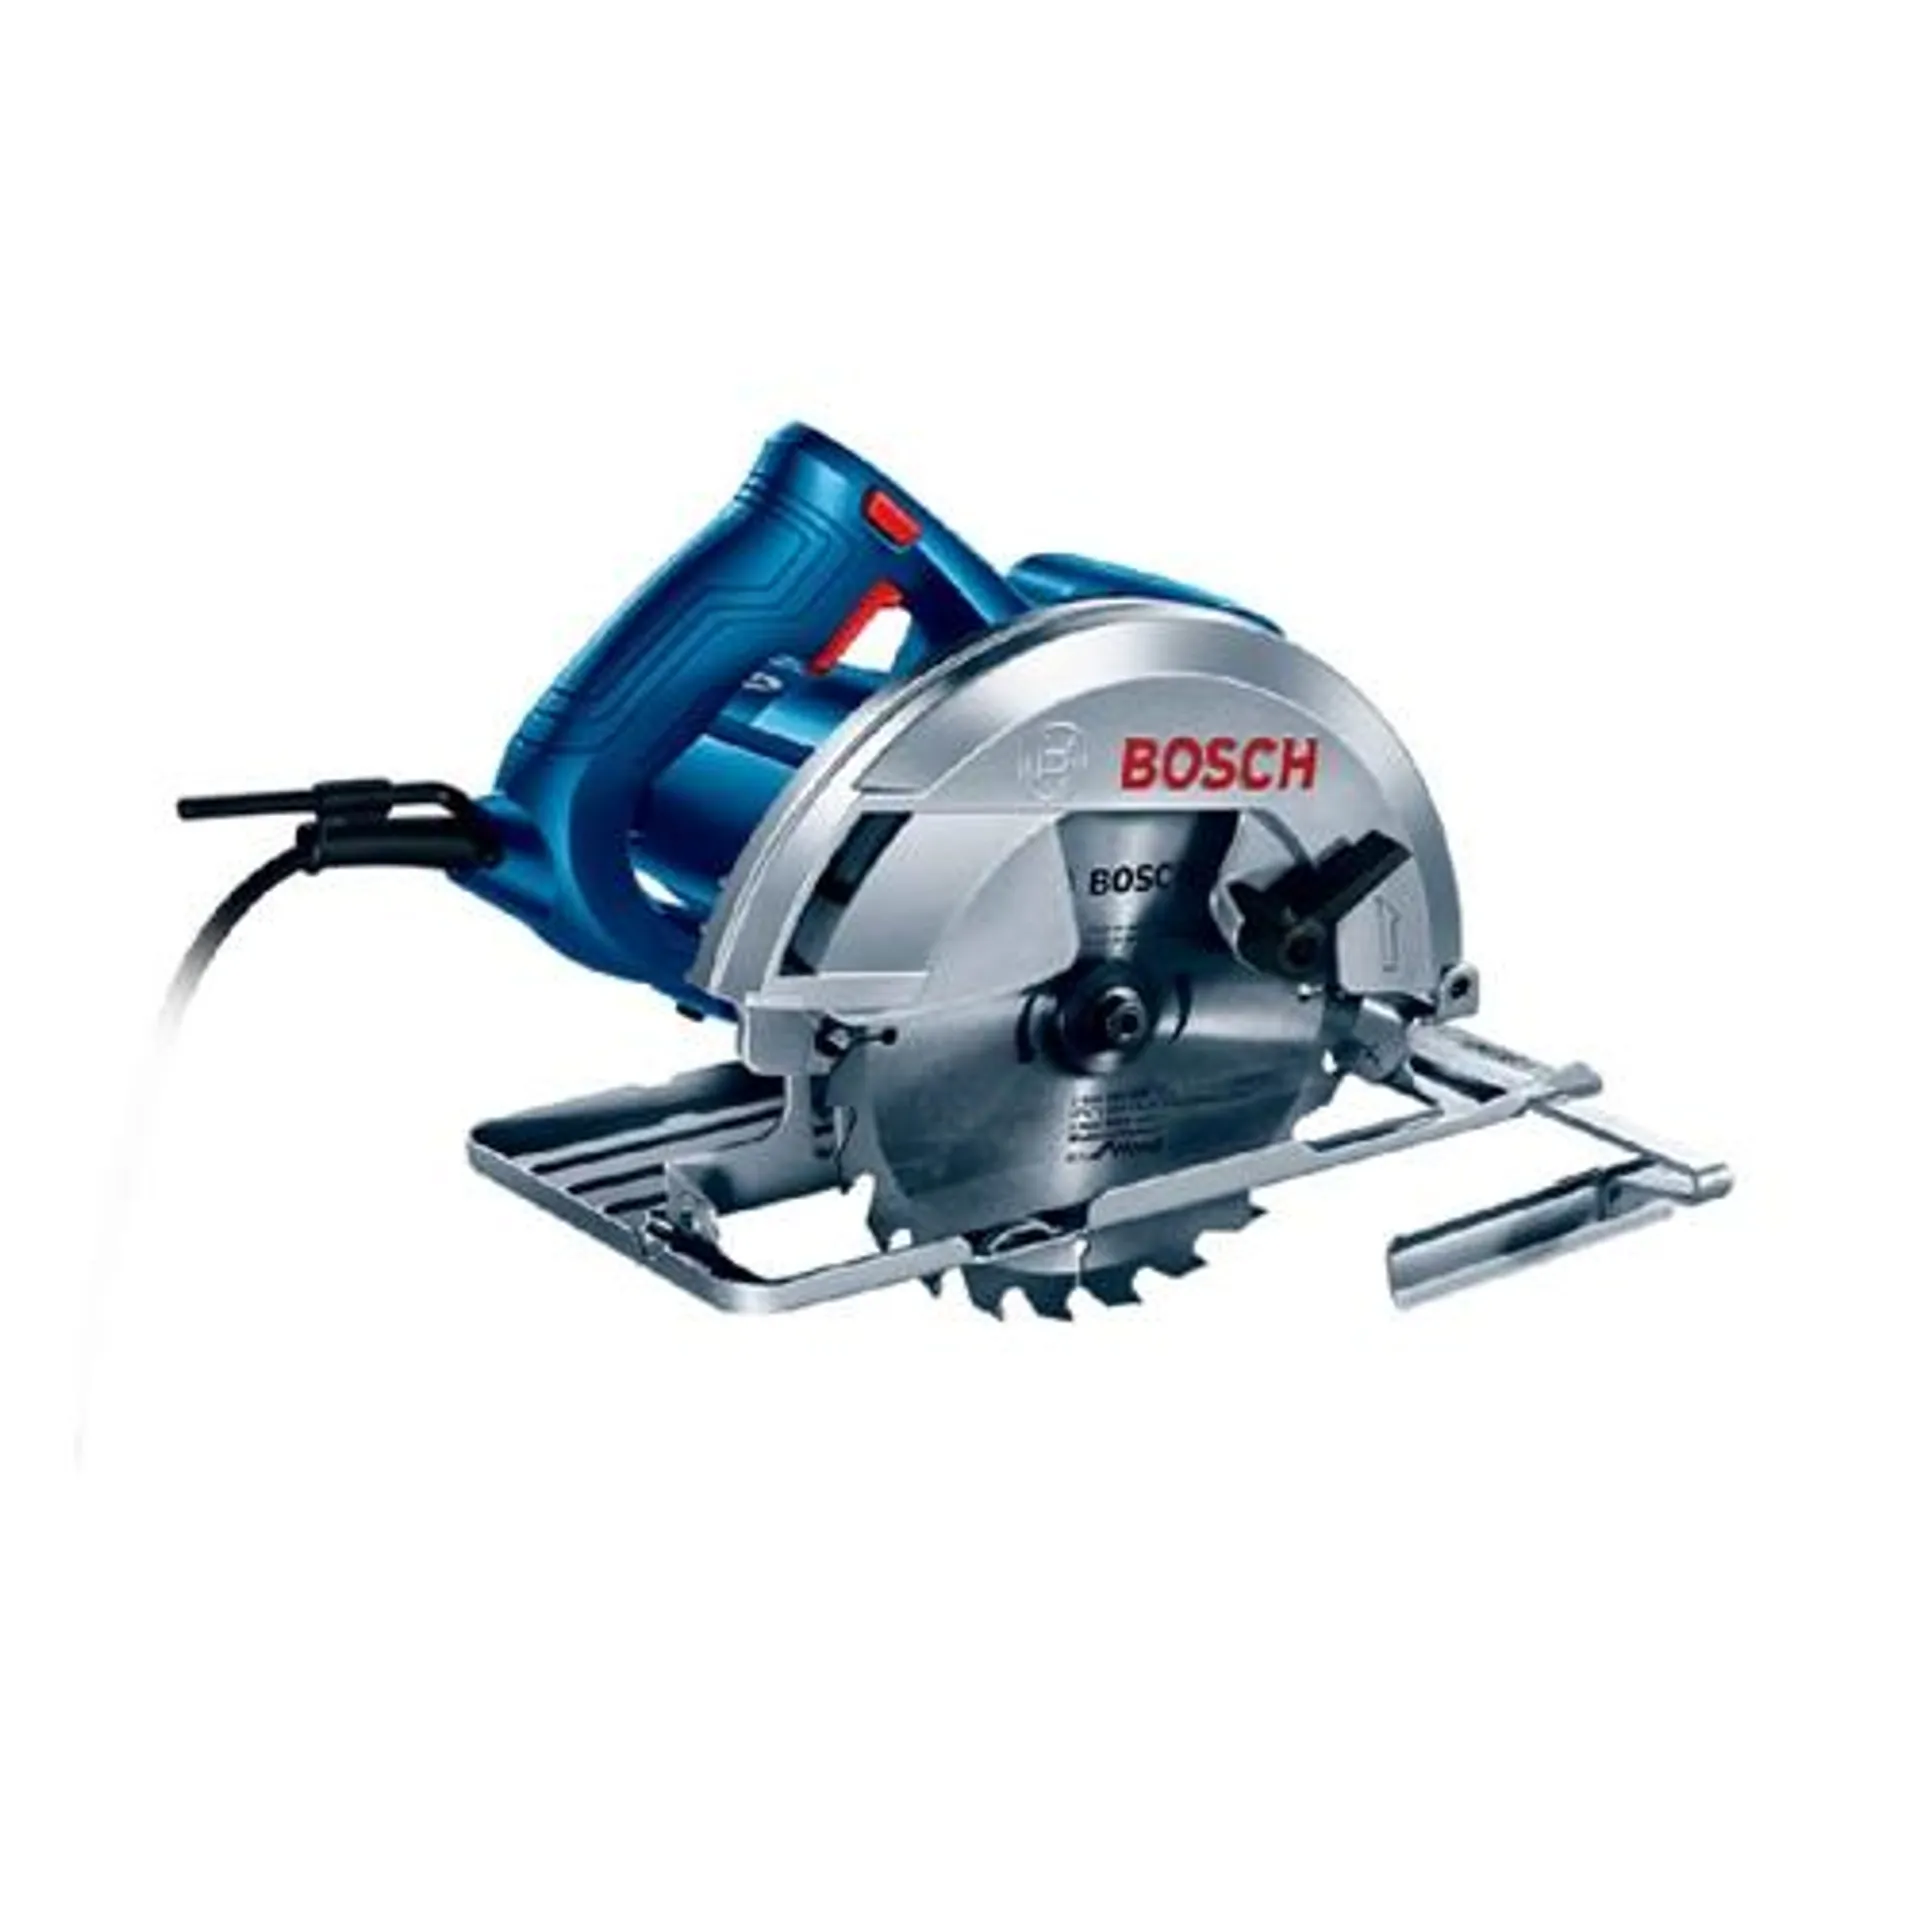 Serra Circular Bosch Gks 150 1500W